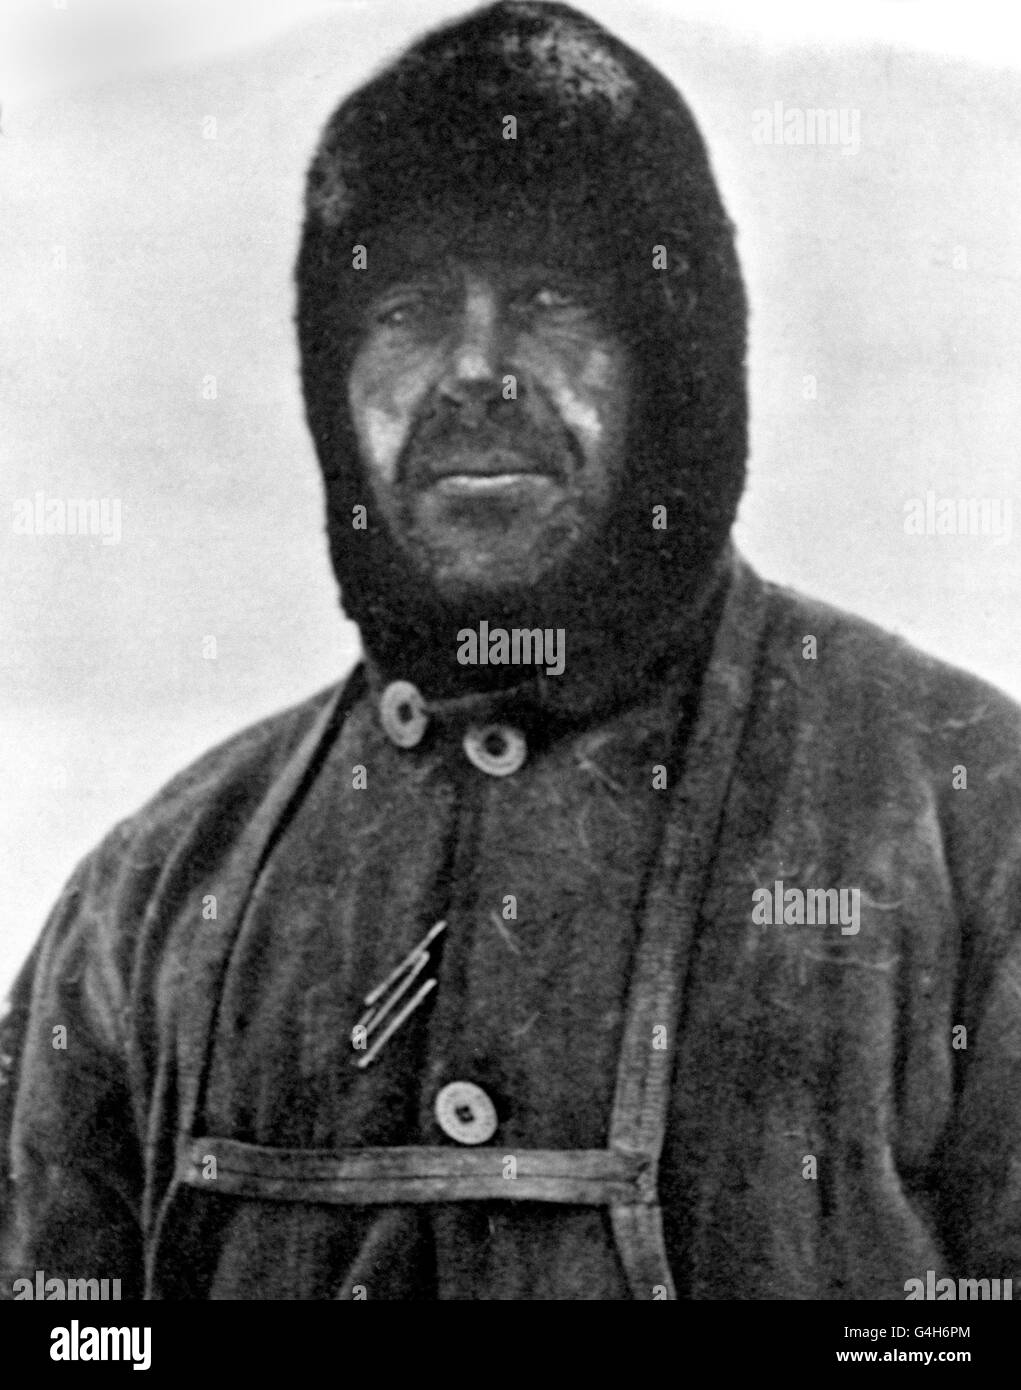 Kapitän Robert Falcon Scott, Leiter der unglücklichen Terra Nova Expedition zum Südpol. Scott führte eine Gruppe von fünf, die am 17. Januar 1912 den Südpol erreichte, nur um festzustellen, dass ihnen Roald Amundsens norwegische Expedition vorausgegangen war. Auf ihrer Rückreise kamen Scott und seine vier Kameraden ums Leben. Stockfoto